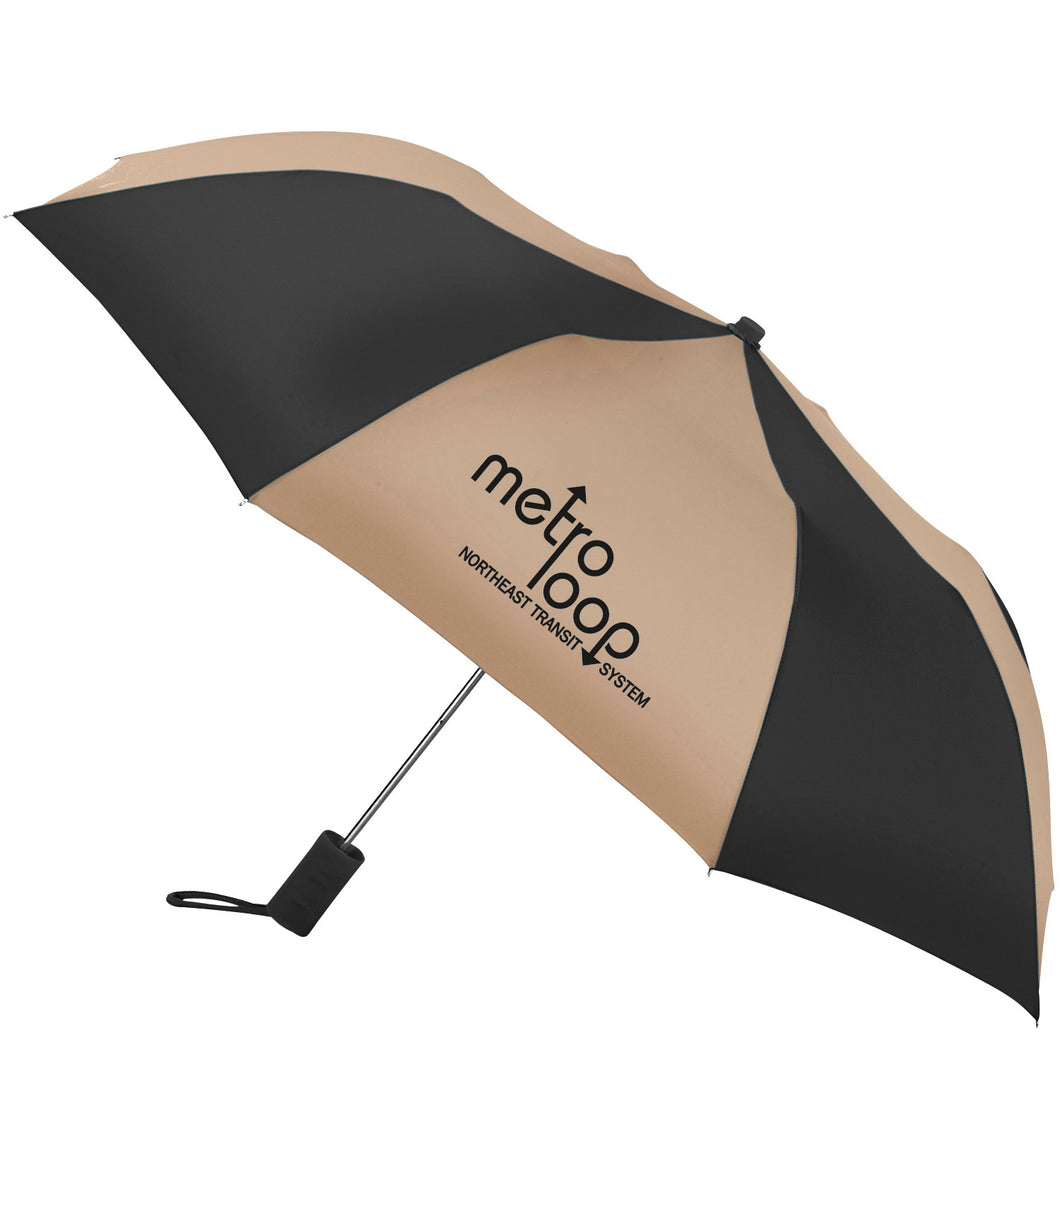 Revolution Compact Multi-Color Umbrella